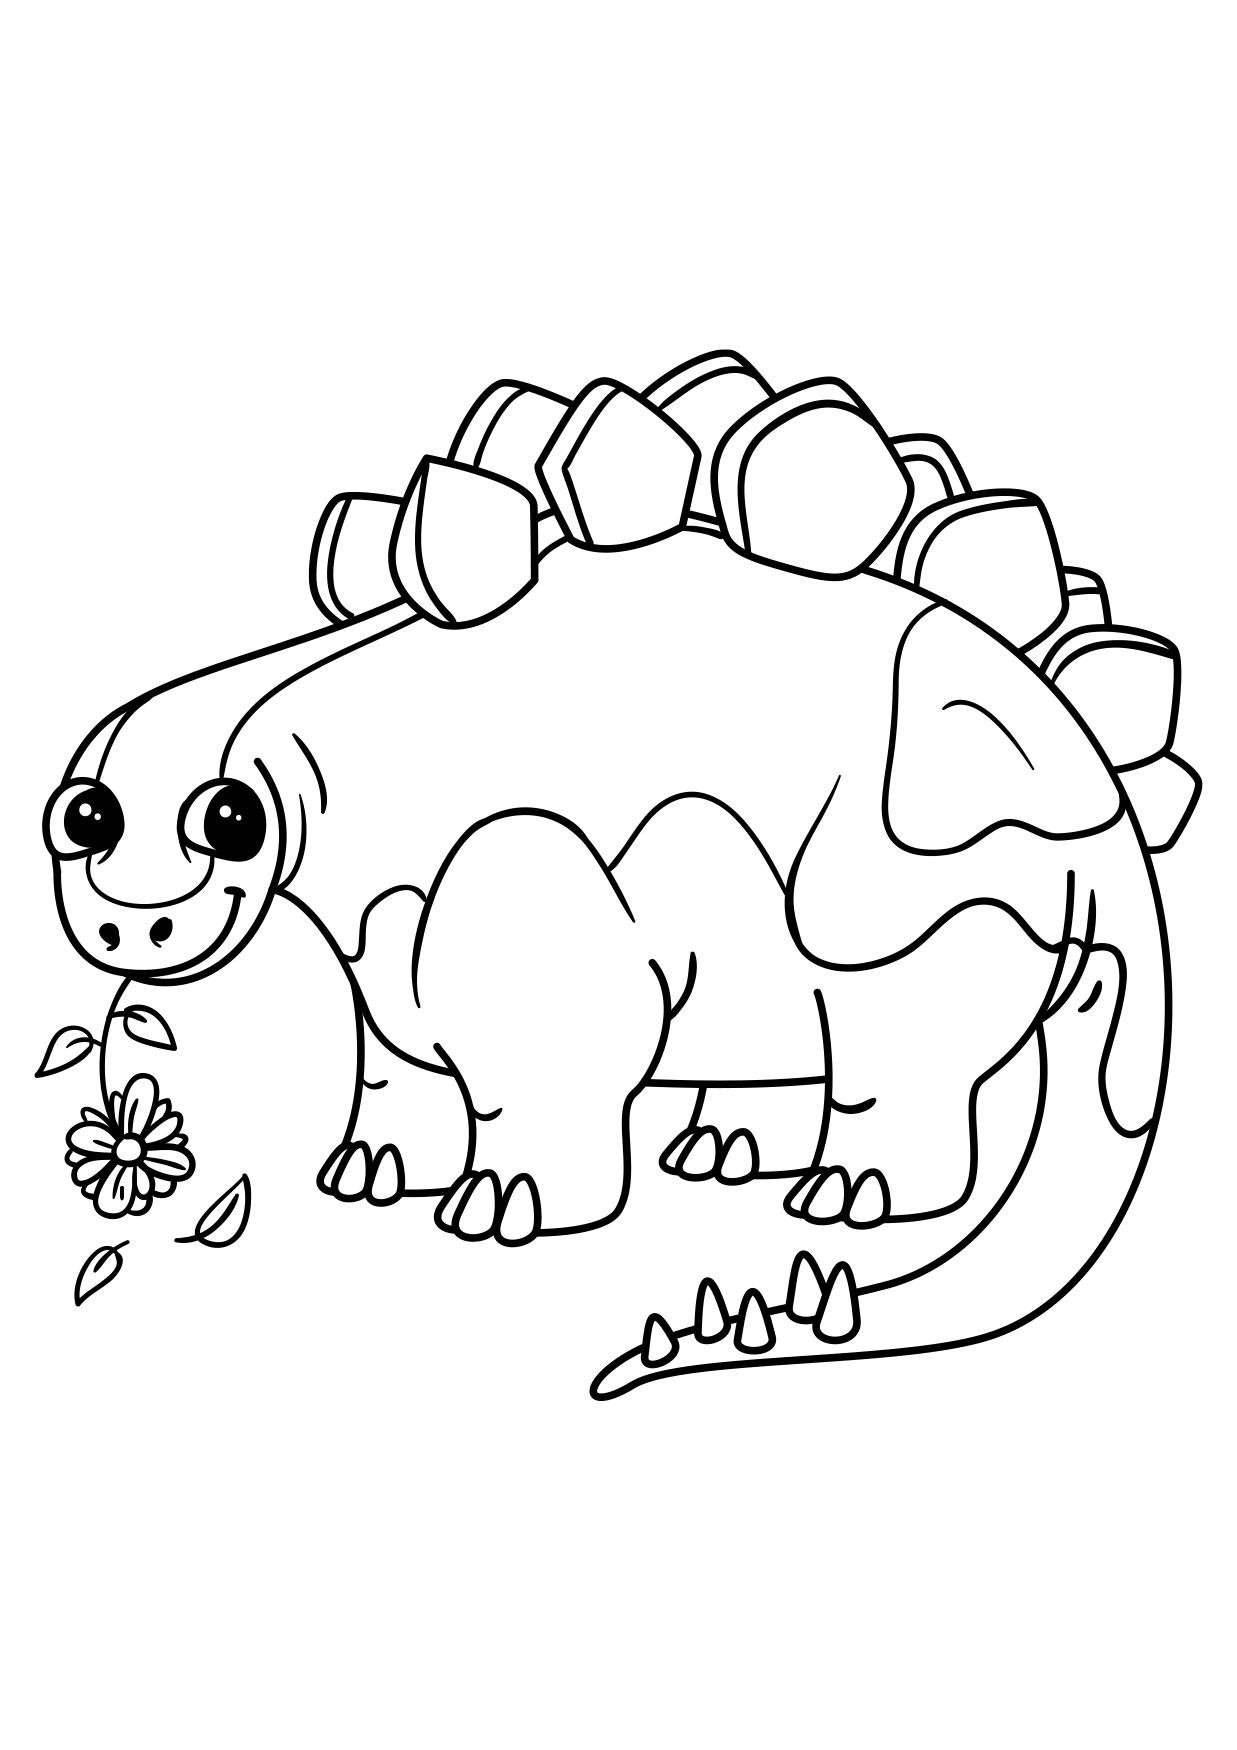 Dibujo para colorear estegosaurio con flor